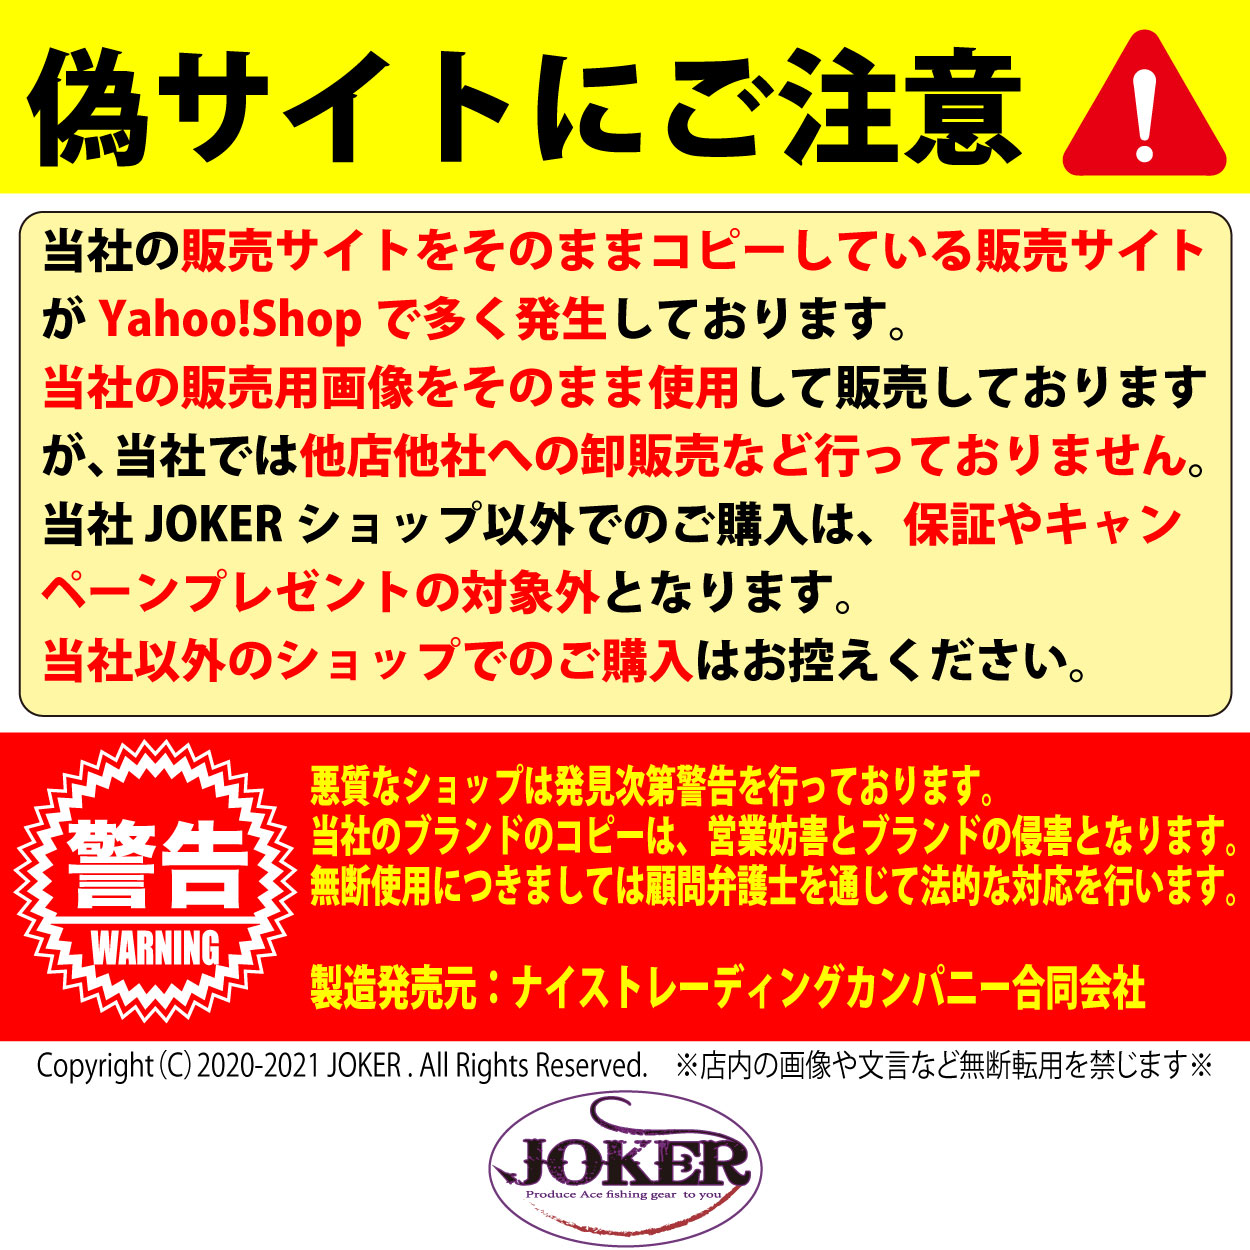 【22年モデル】９４６　JOKER　マフラータオル/JOKER黒金　200㎜×1100㎜　1枚入画像